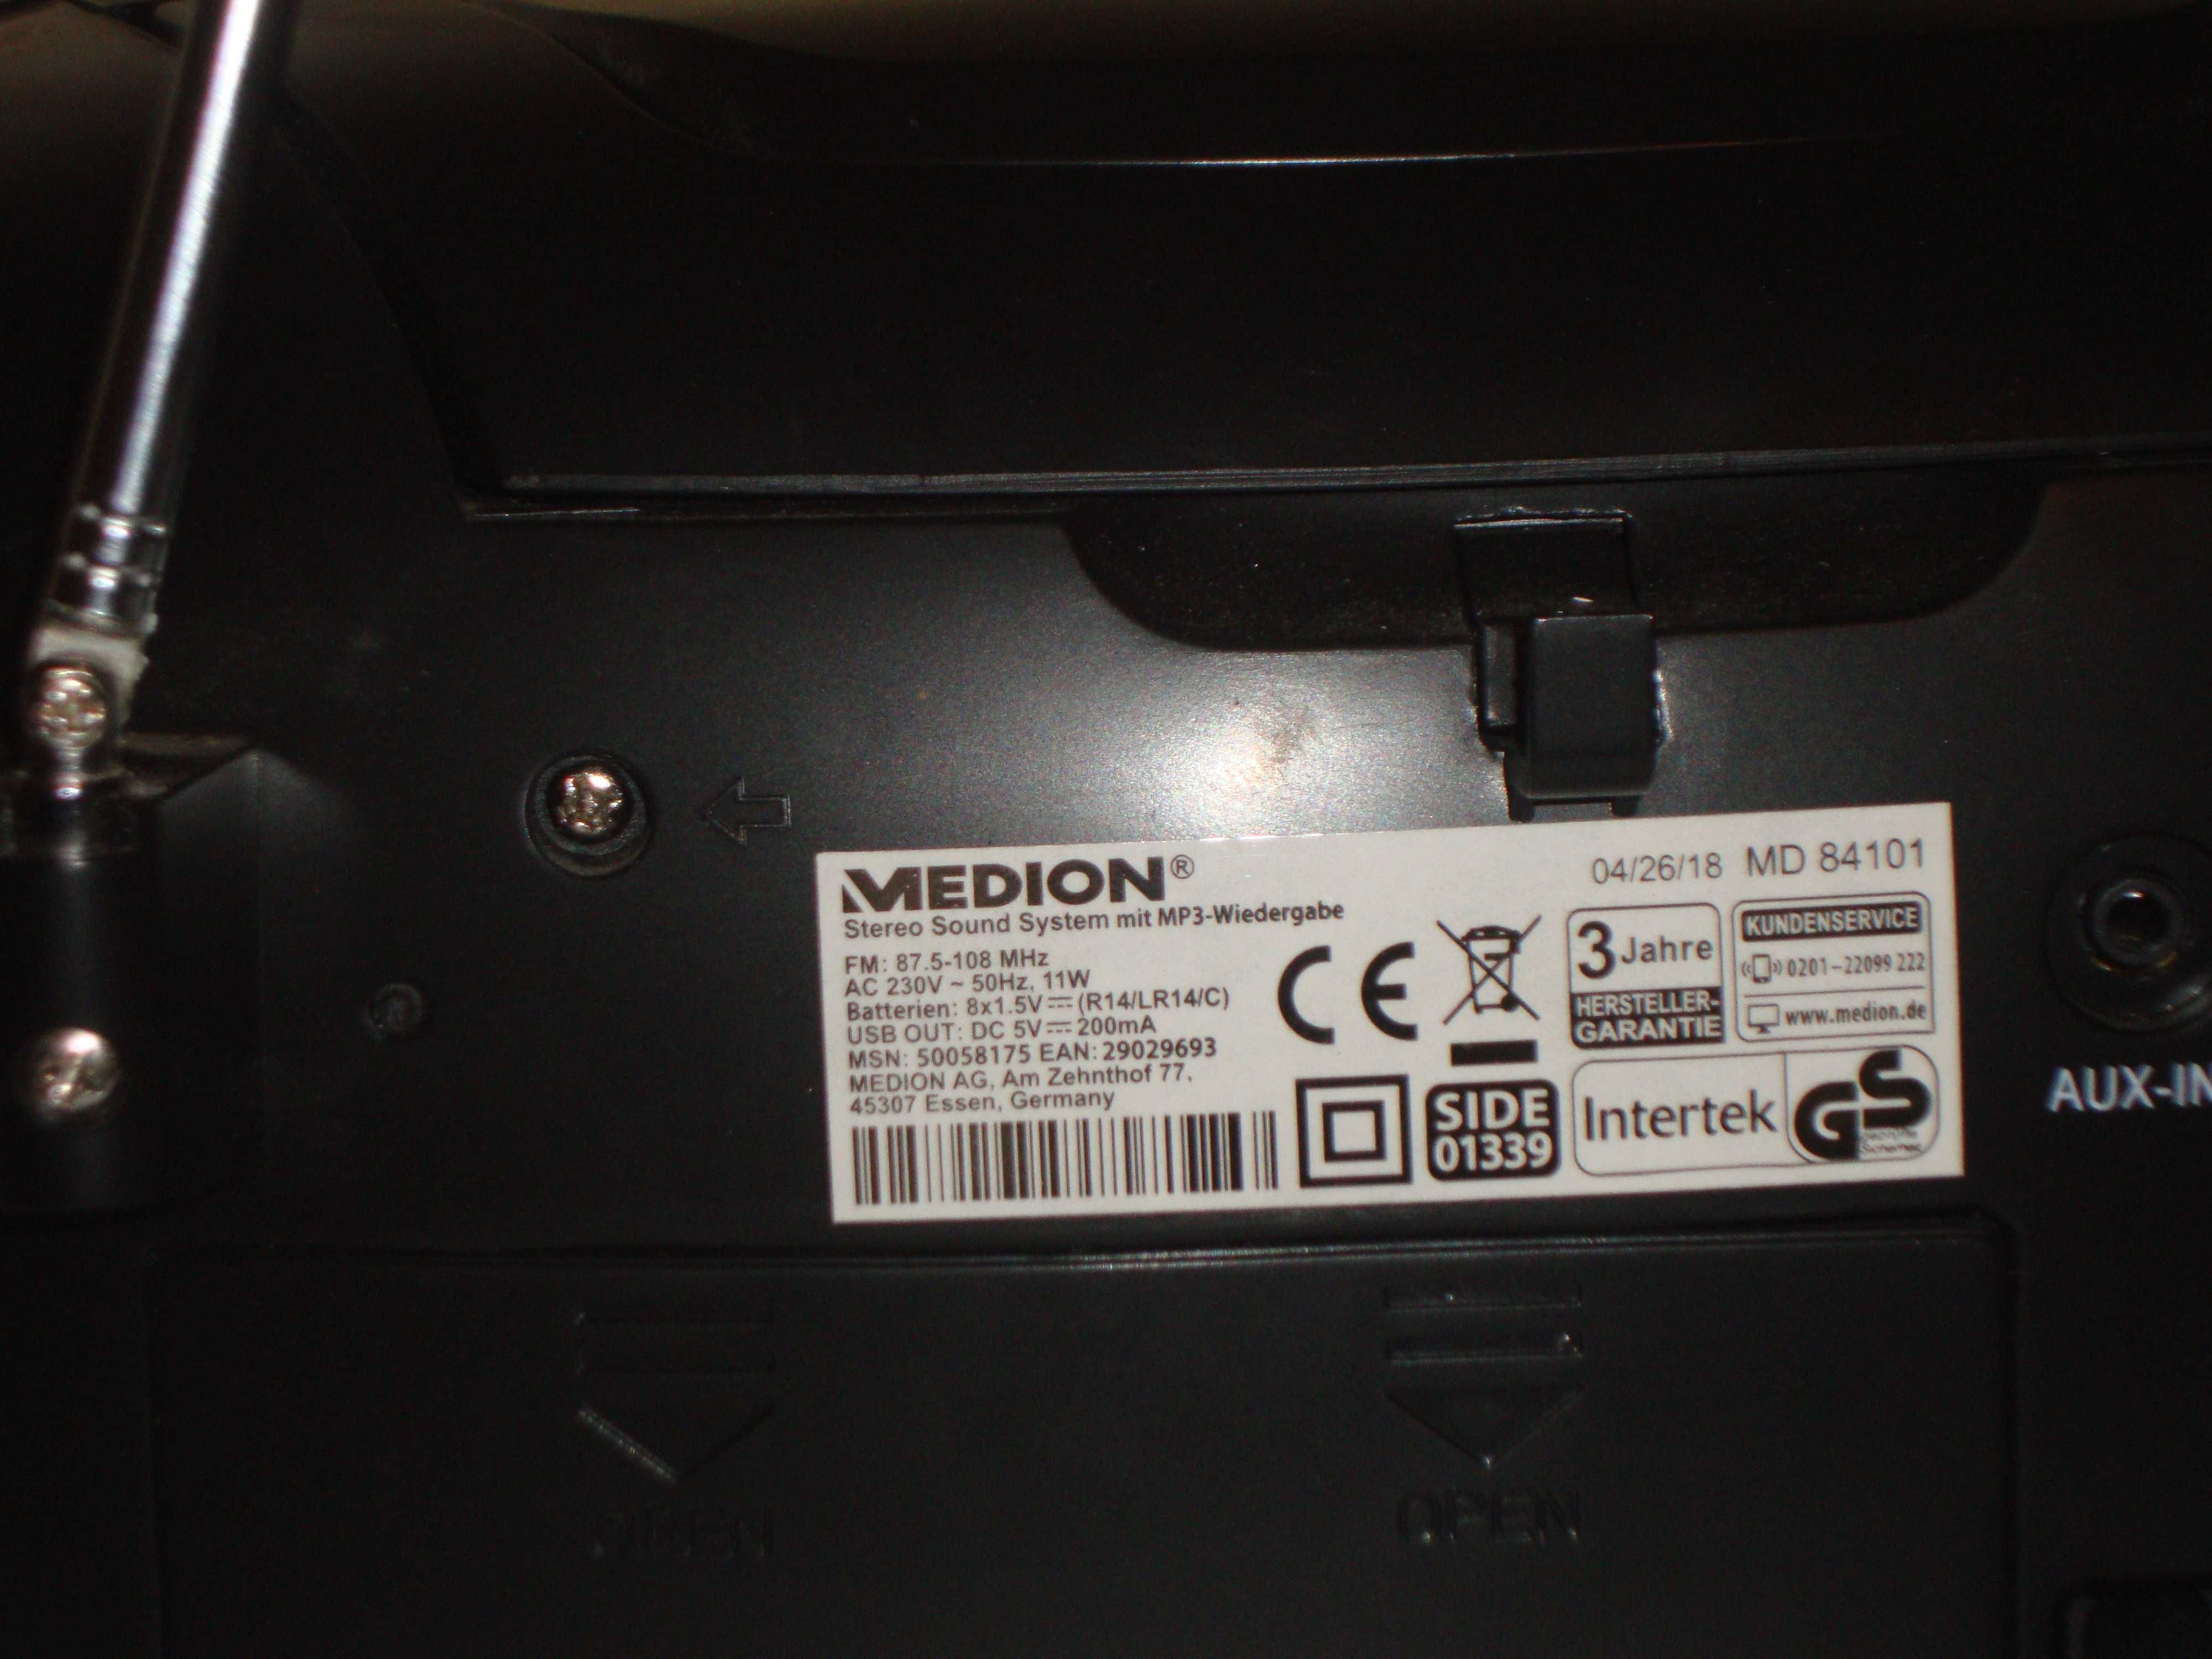 BOOMBOX MEDION MD84101
CD nie działa